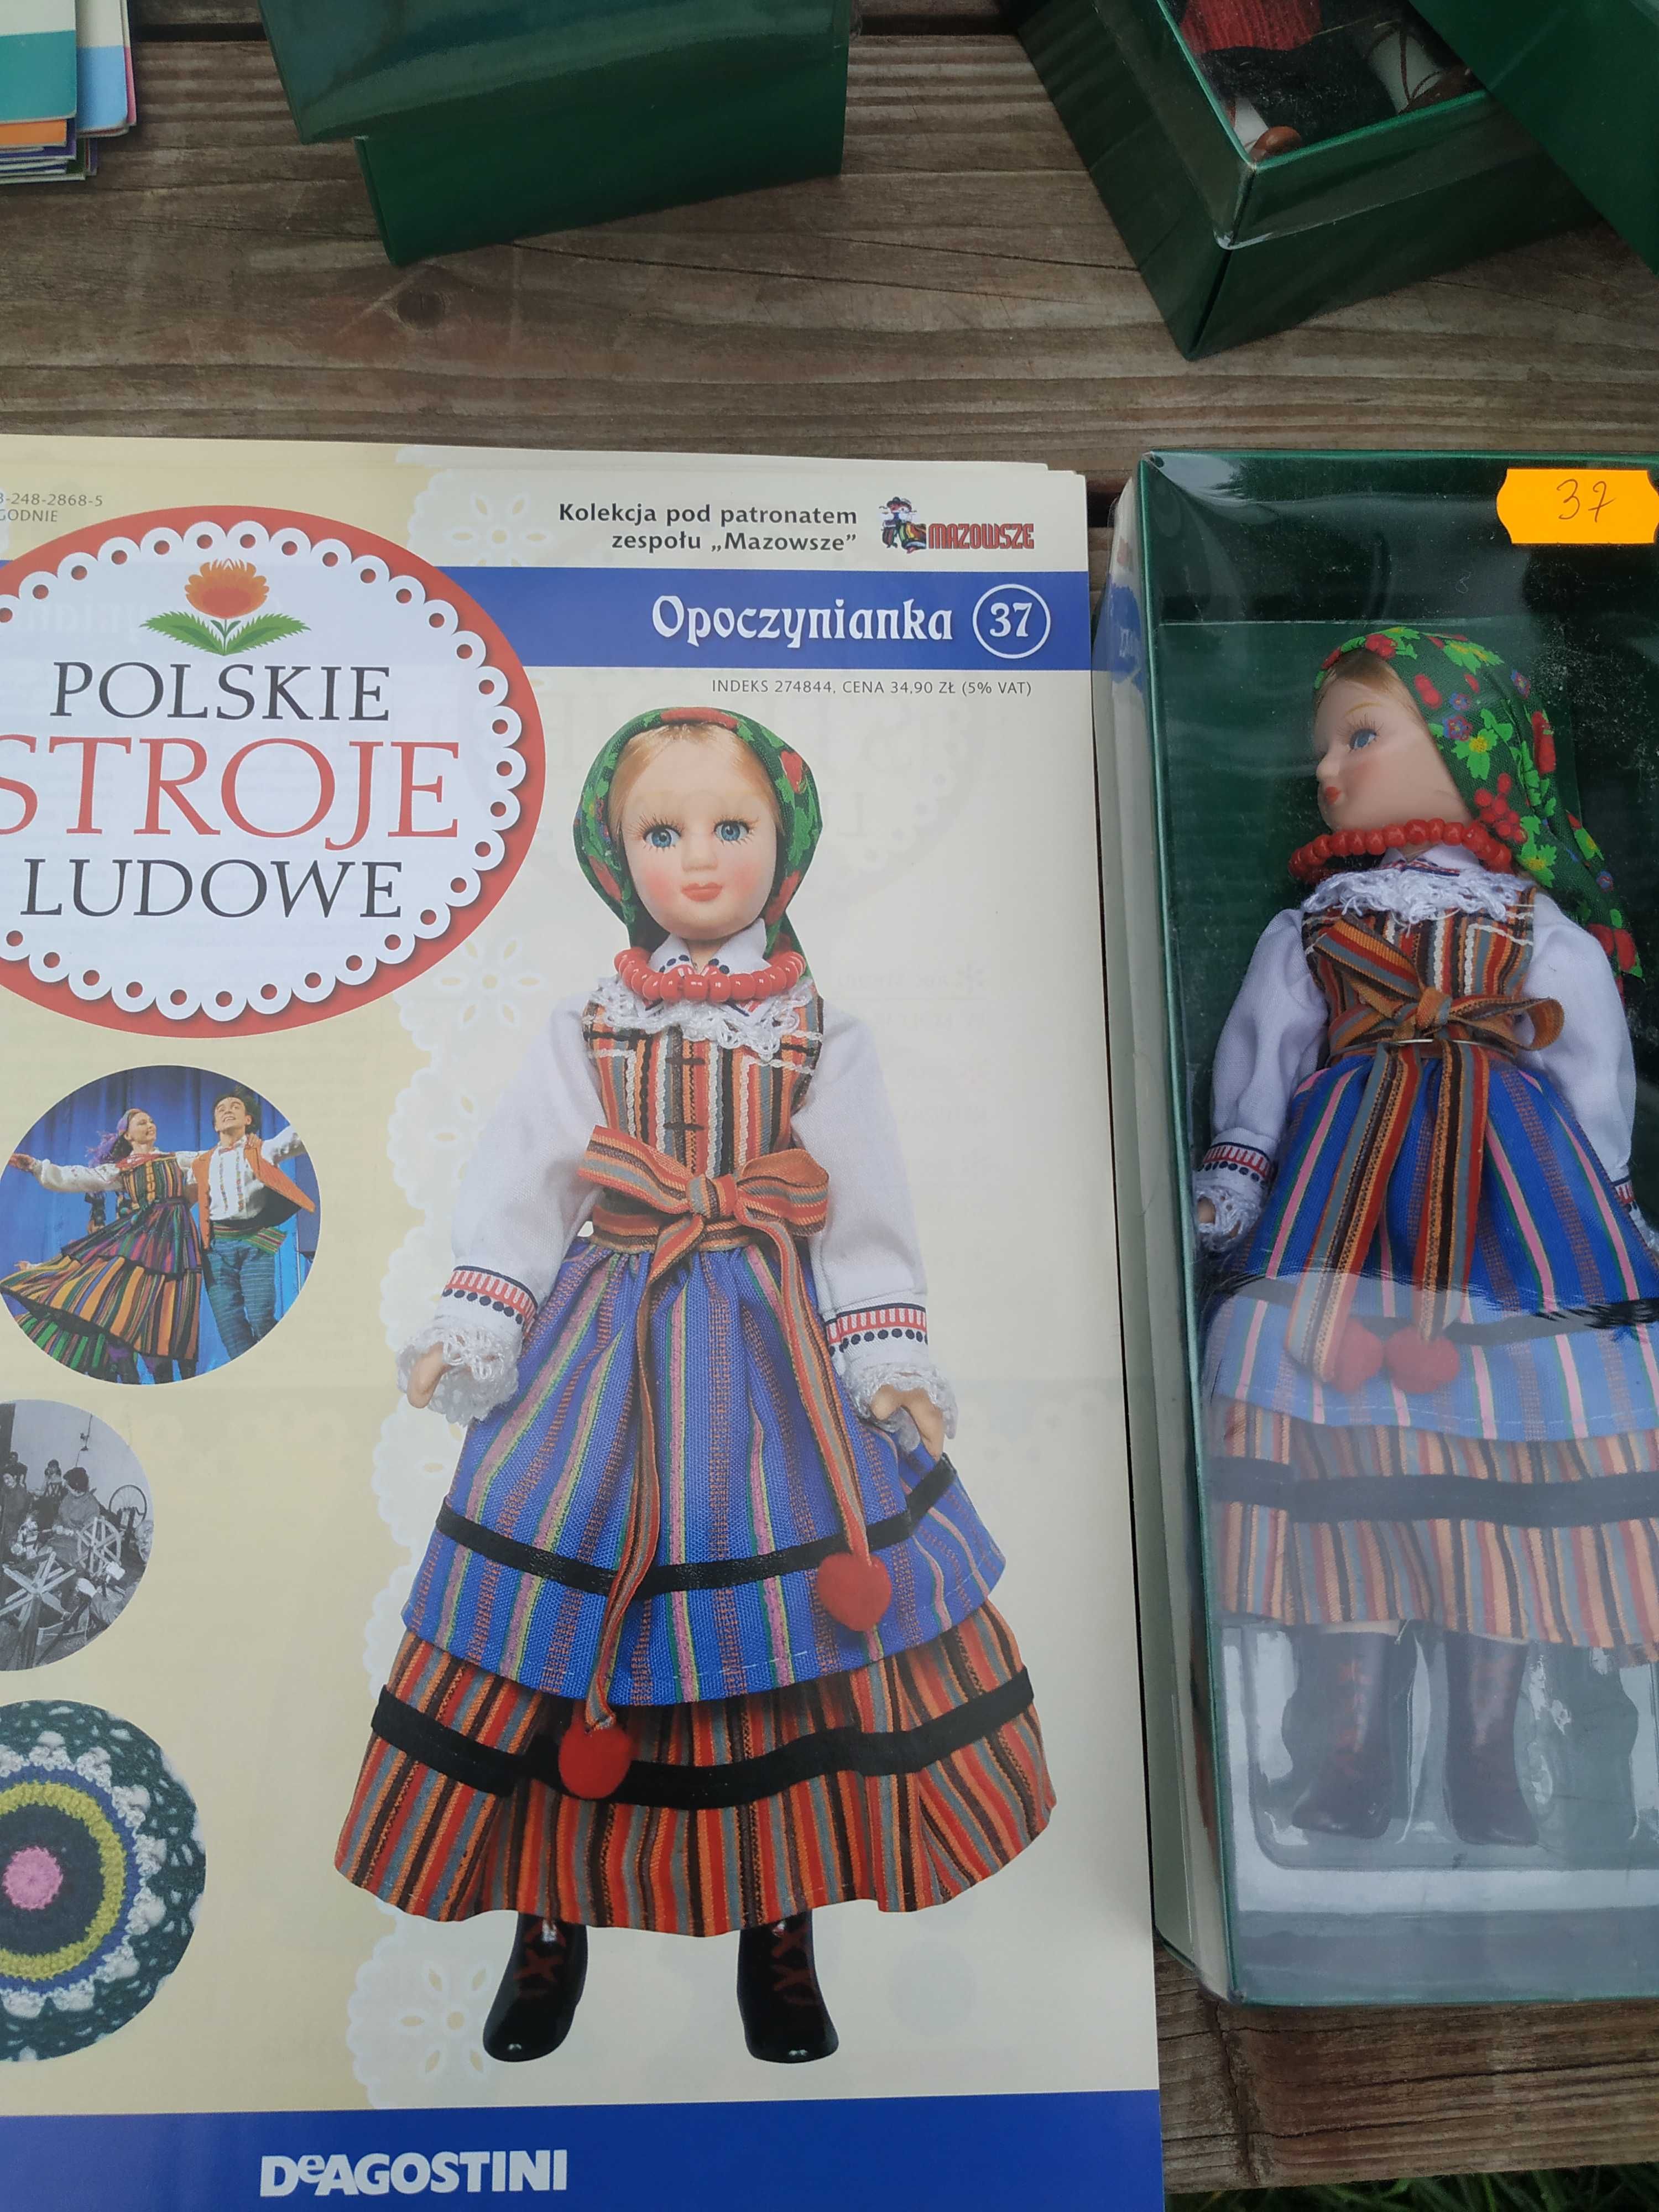 Porcelanowa lalka w polskim stroju ludowym